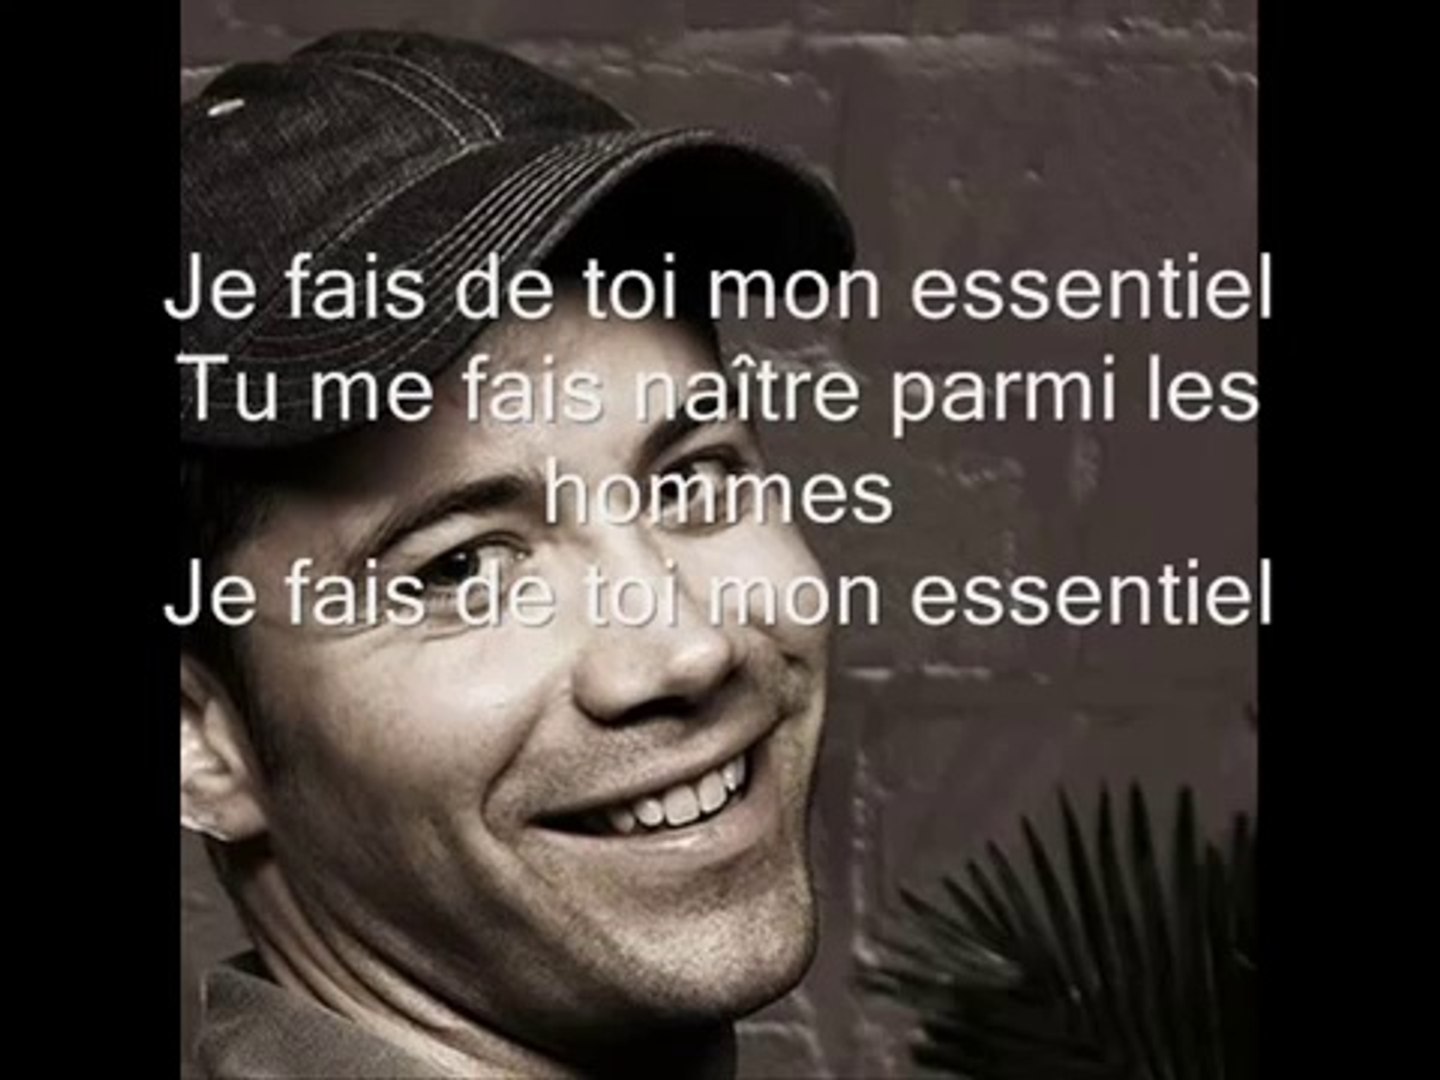 Emmanuel Moire - Mon essentiel (Lyrics / Paroles) - Vidéo Dailymotion